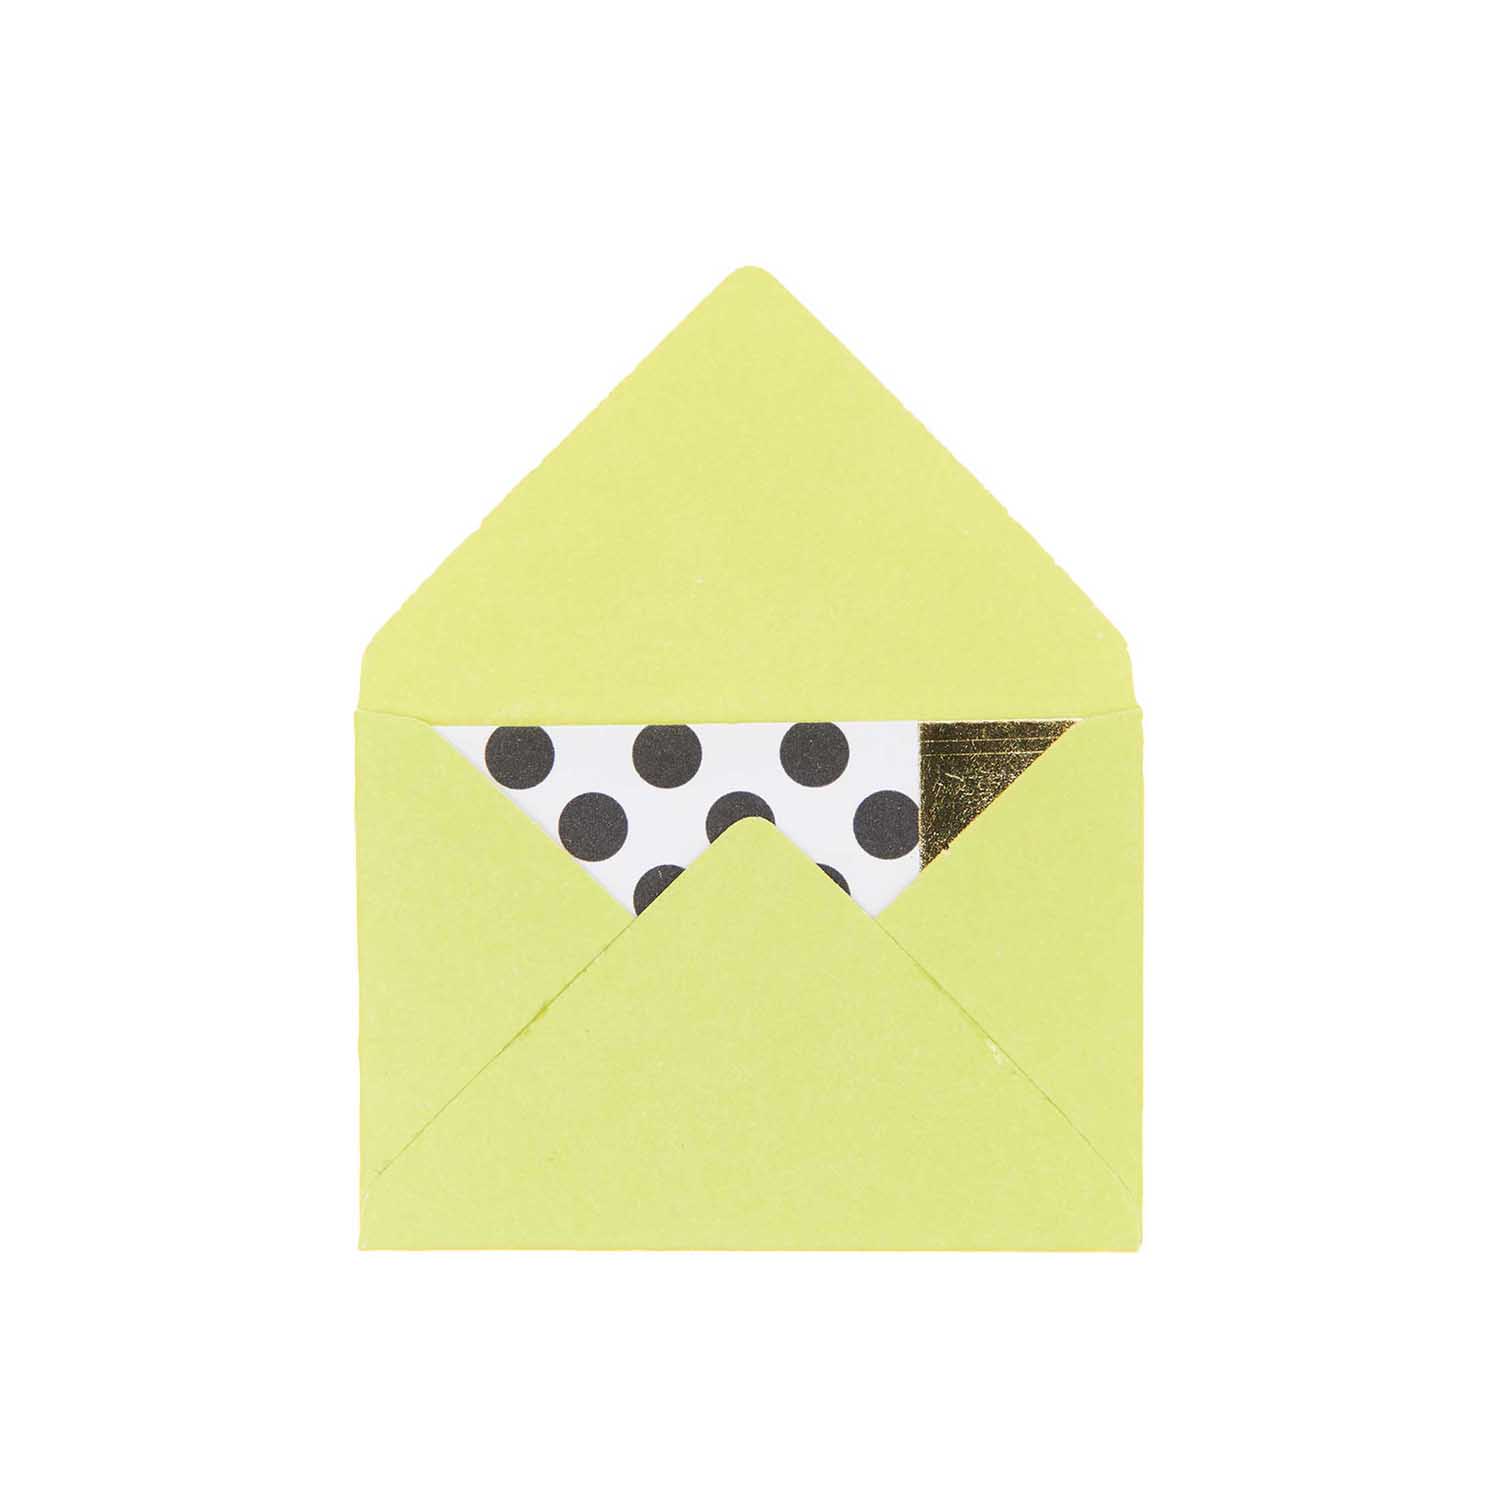 NEU Mini Briefumschläge & Karten, 3 x 4,5 cm, 10 Stück, Hellgrün - Hot Foil Gold